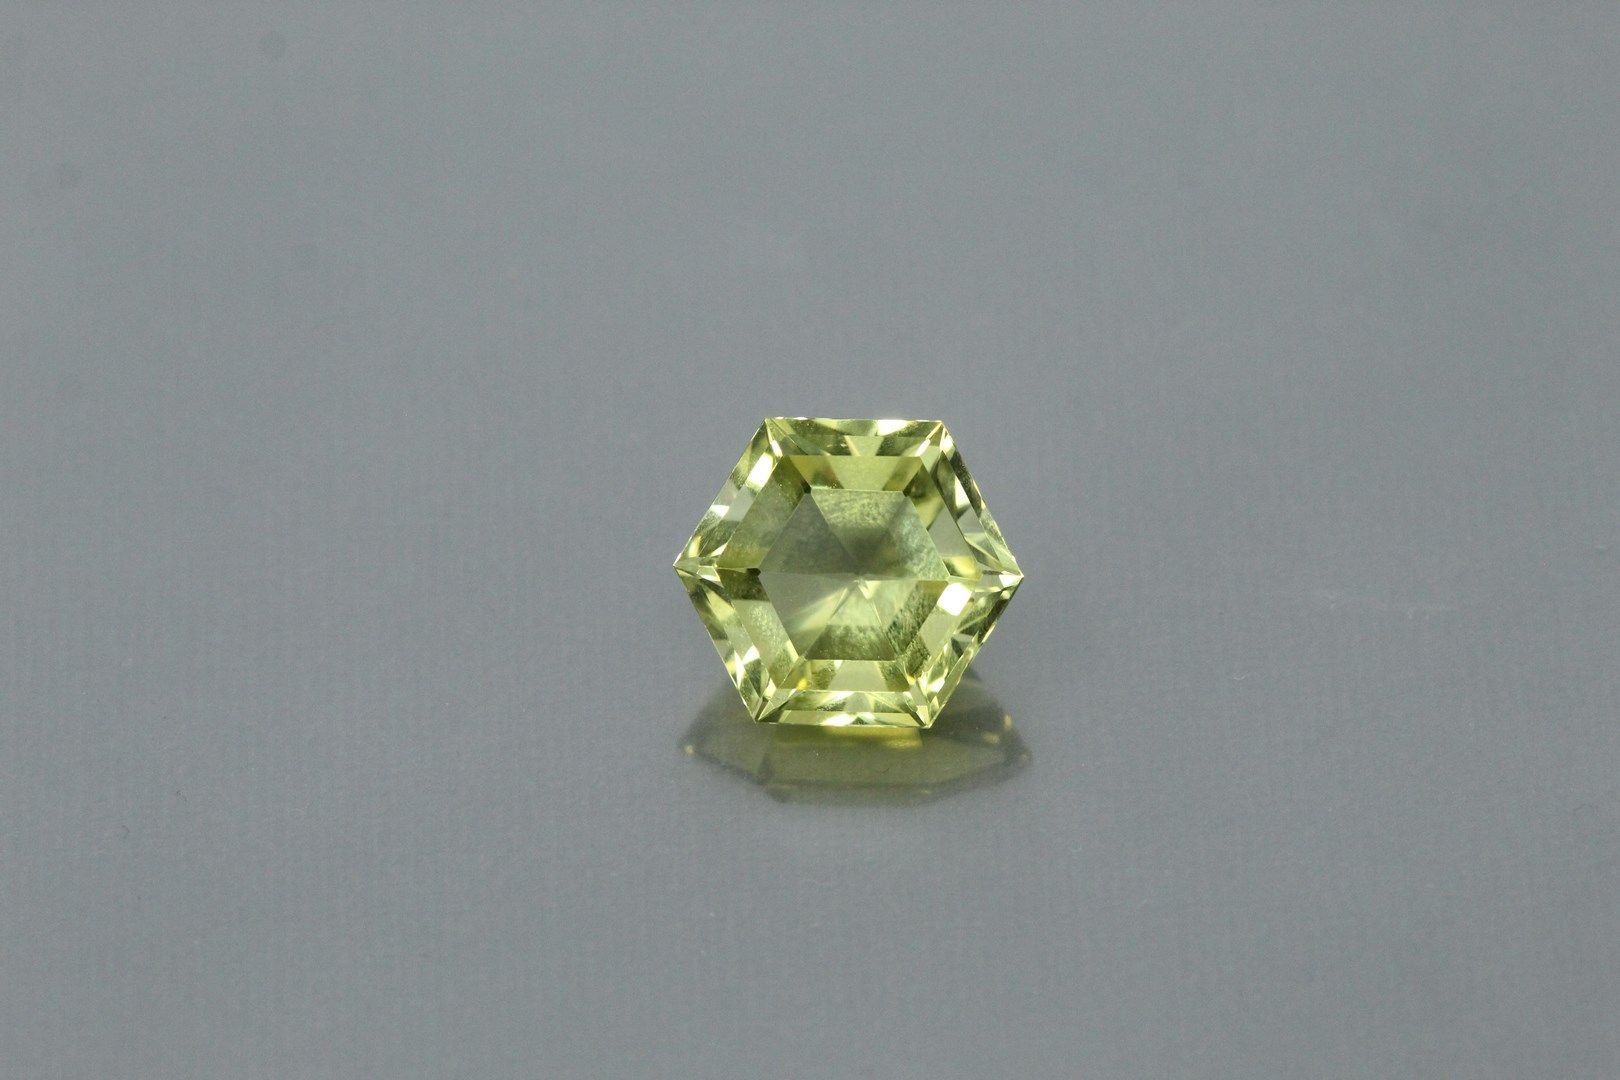 Null 八角形的黄水晶在纸上。

重量：约16.30克拉。